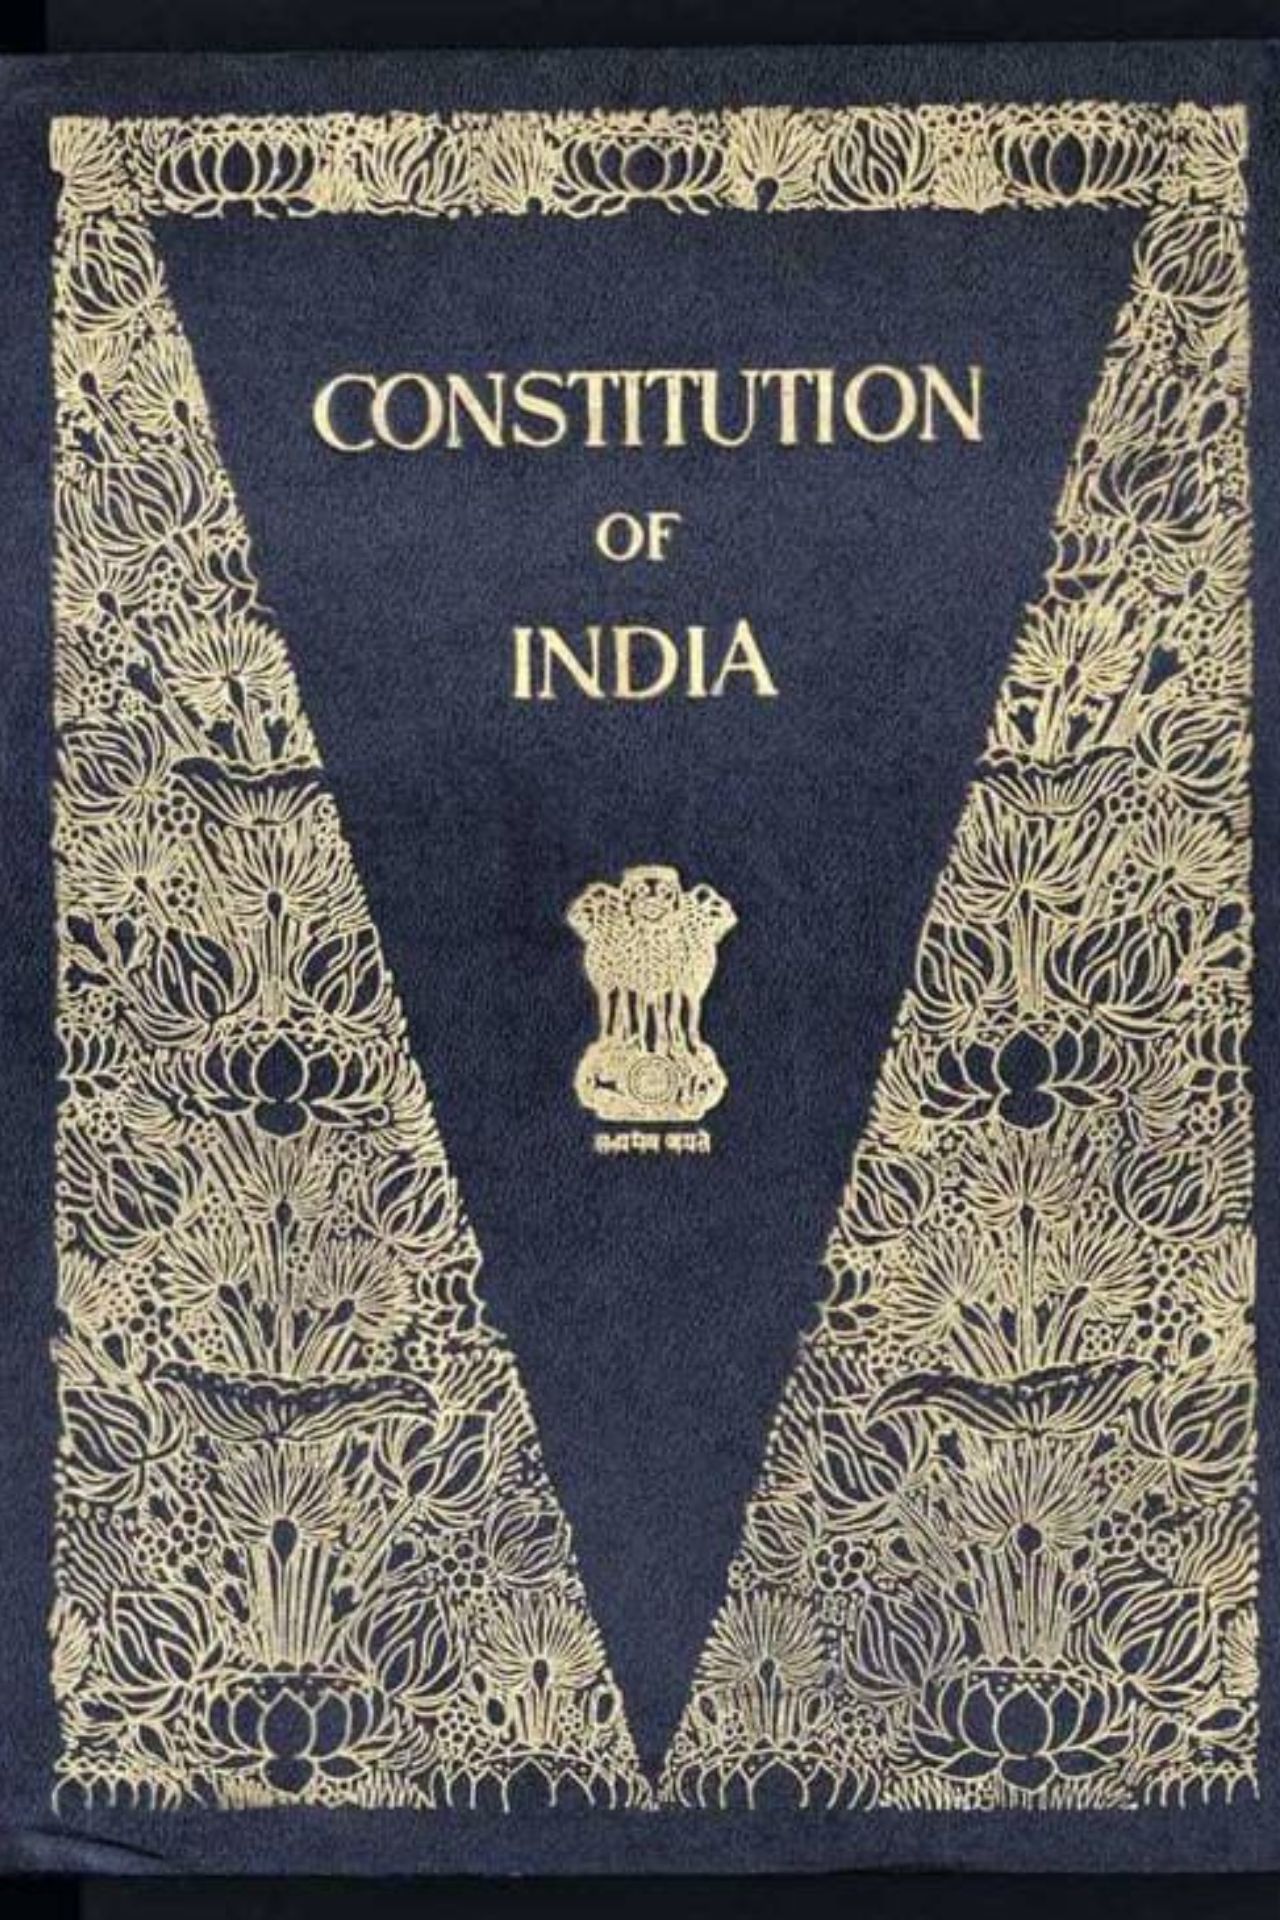 हमारे संविधान के हर पन्ने पर किसका नाम लिखा है?